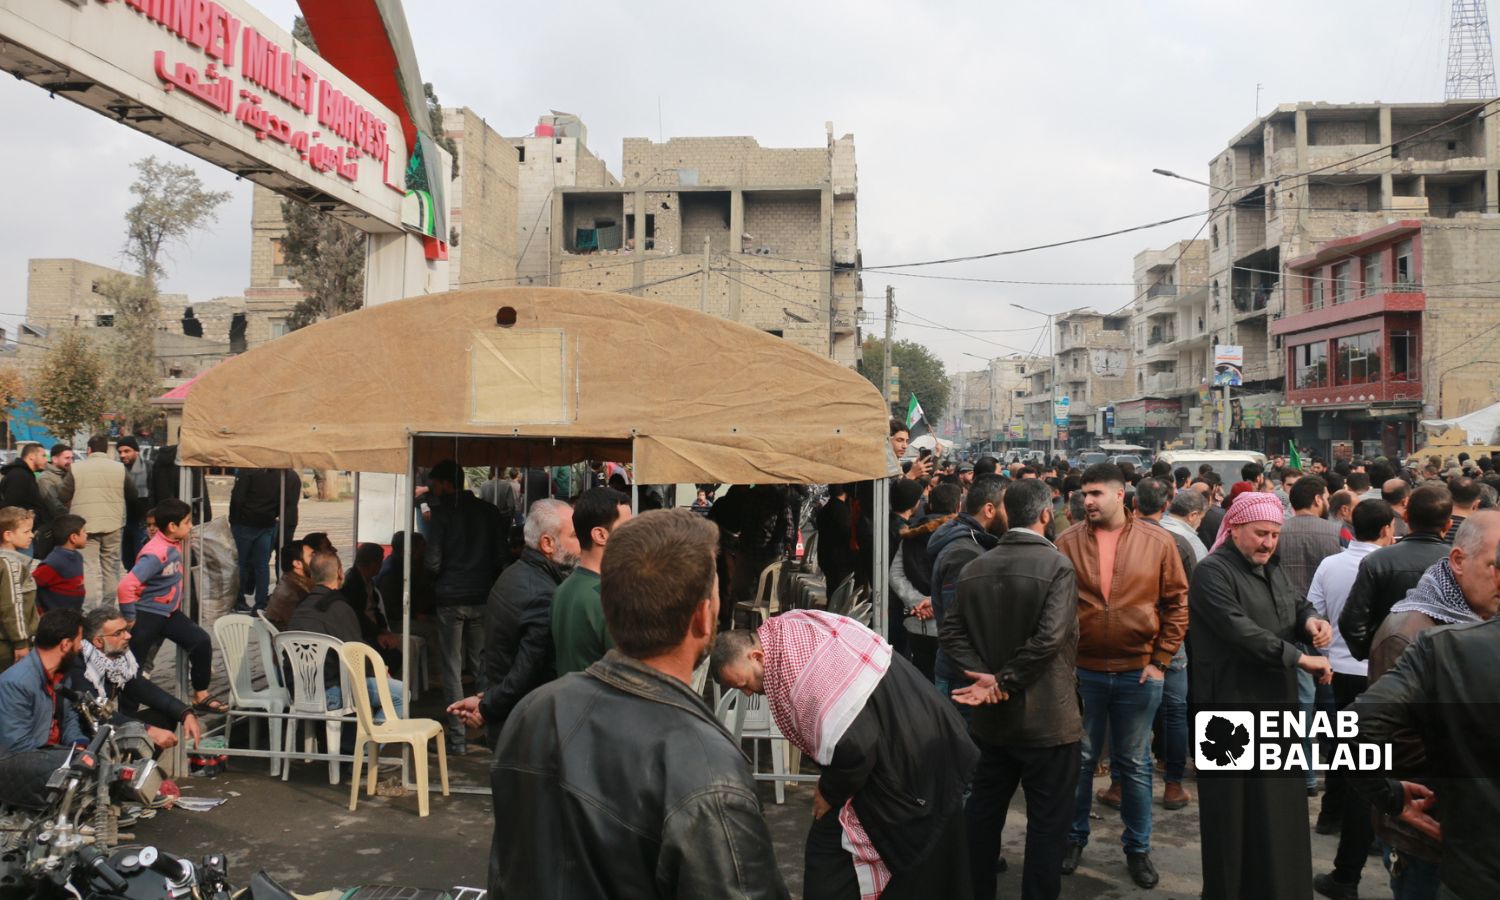 عناصر "الشرطة المدنية" في مدينة الباب بريف حلب الشرقي يحاولون فض خيمة اعتصام لمتظاهرين للمطالبة بكشف نتائج تحقيقات لعمليات اغتيال بالمنطقة وكشف الفاعلين ومحاسبتهم- 16 من تشرين الثاني 2022 (عنب بلدي/ ديان جنباز)